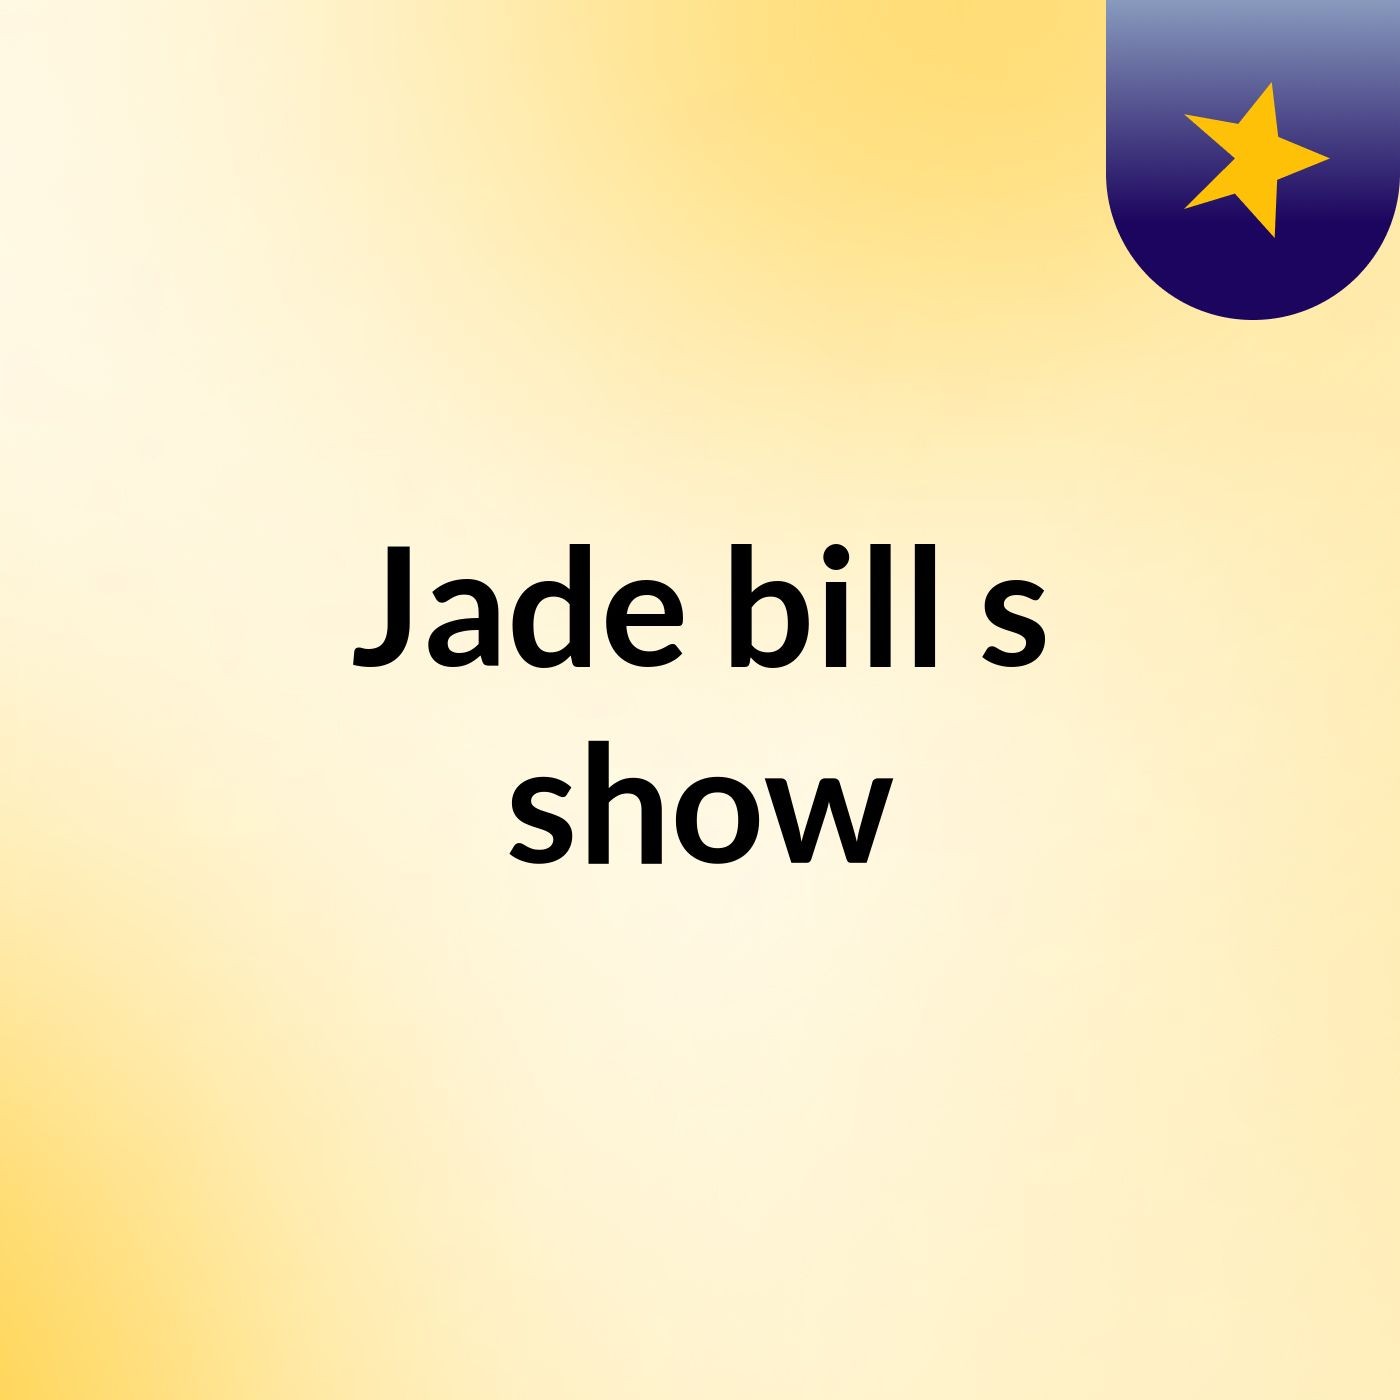 Episode 4 - Jade bill's show